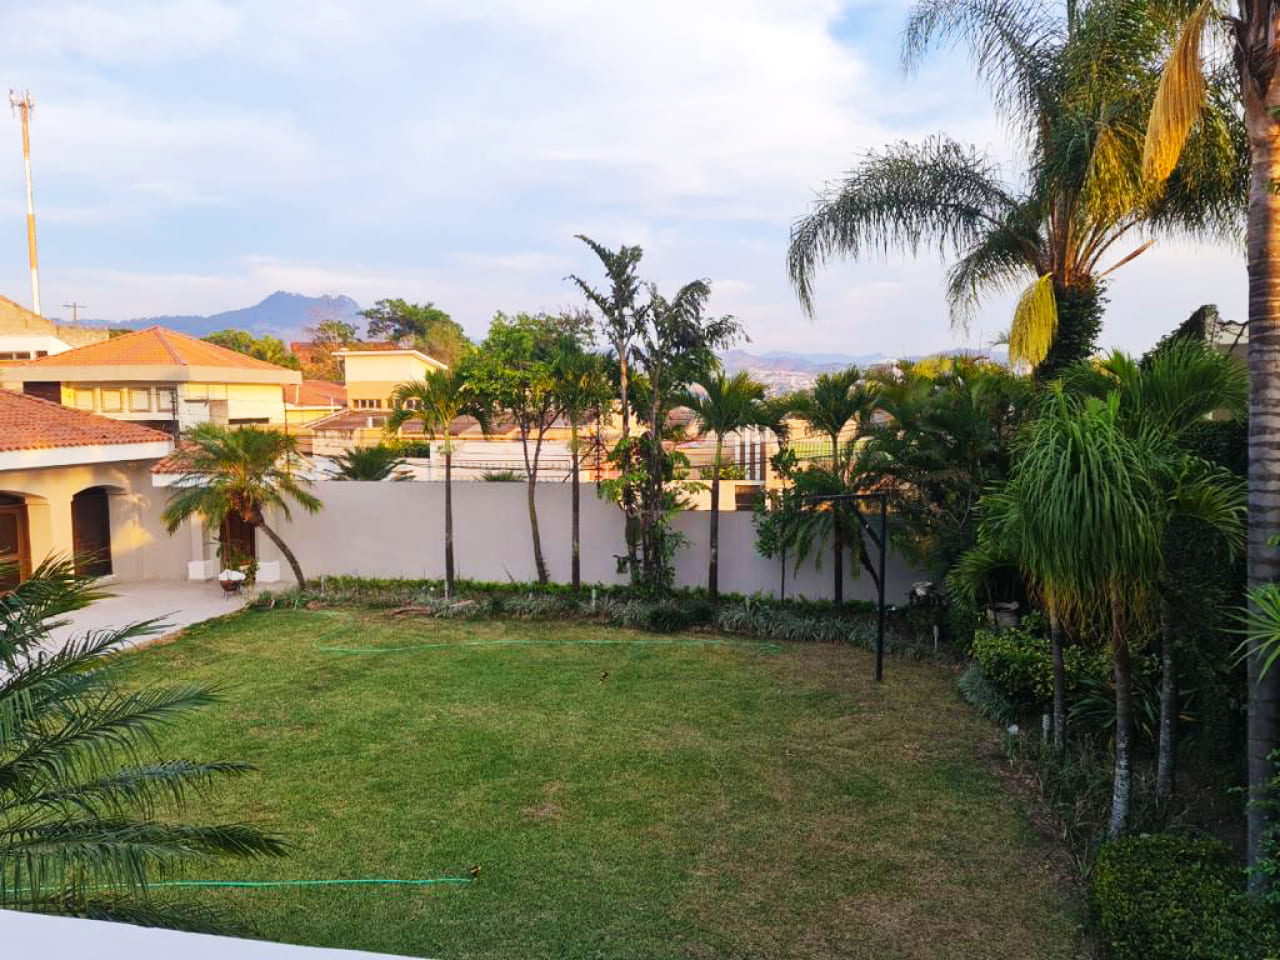 Amplio jardín con grama verde, arboles de palmera, frente a la casa en renta con cielo azul.